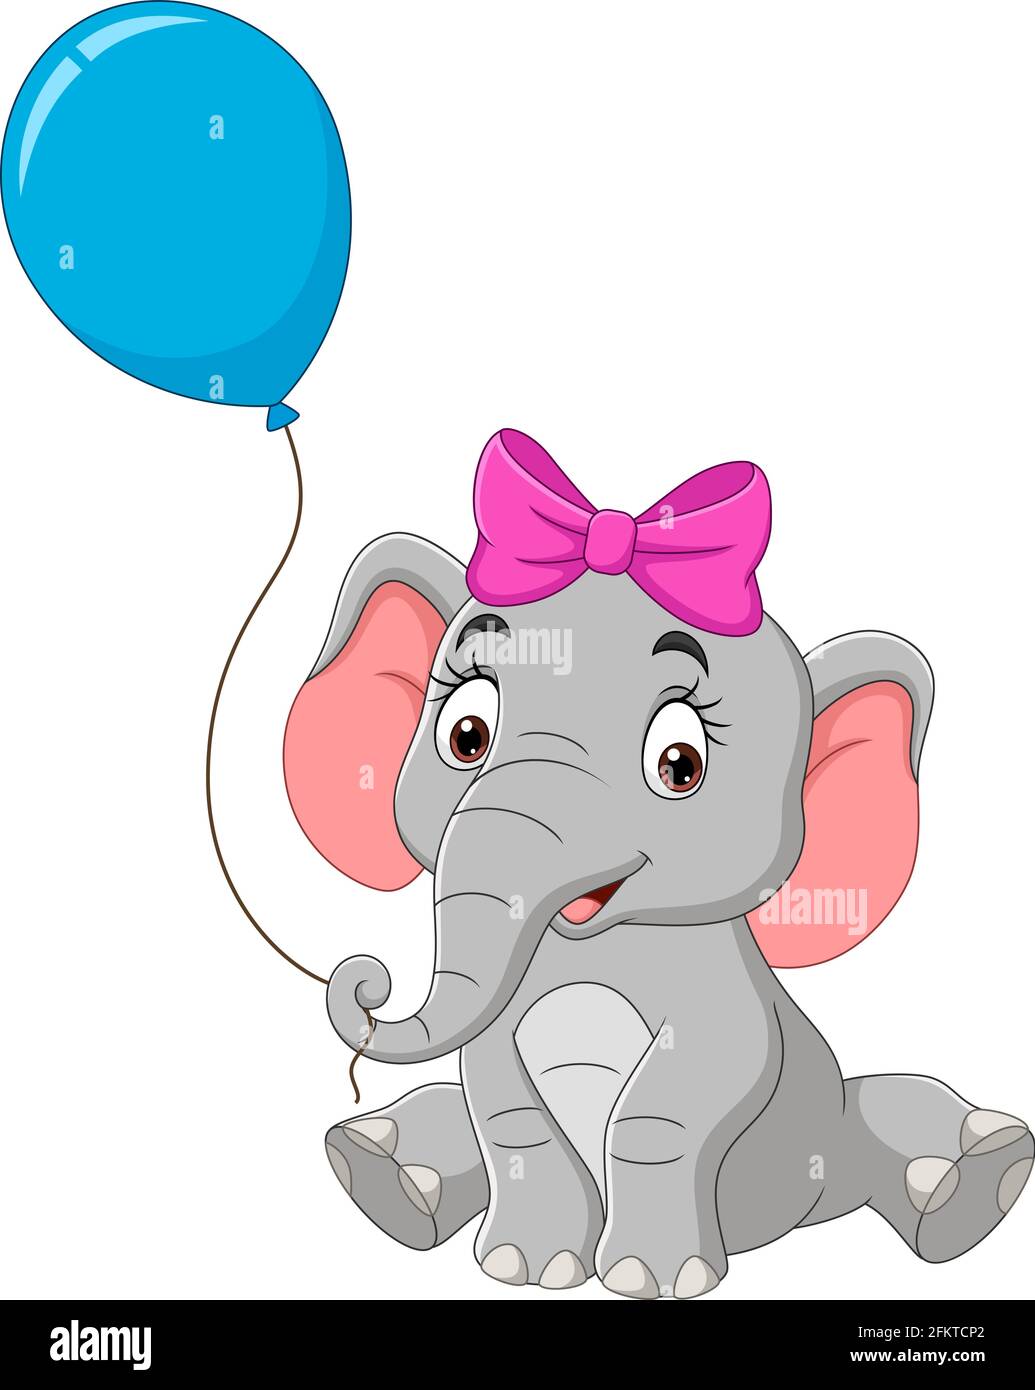 Dessin animé éléphant avec un ballon bleu Illustration de Vecteur